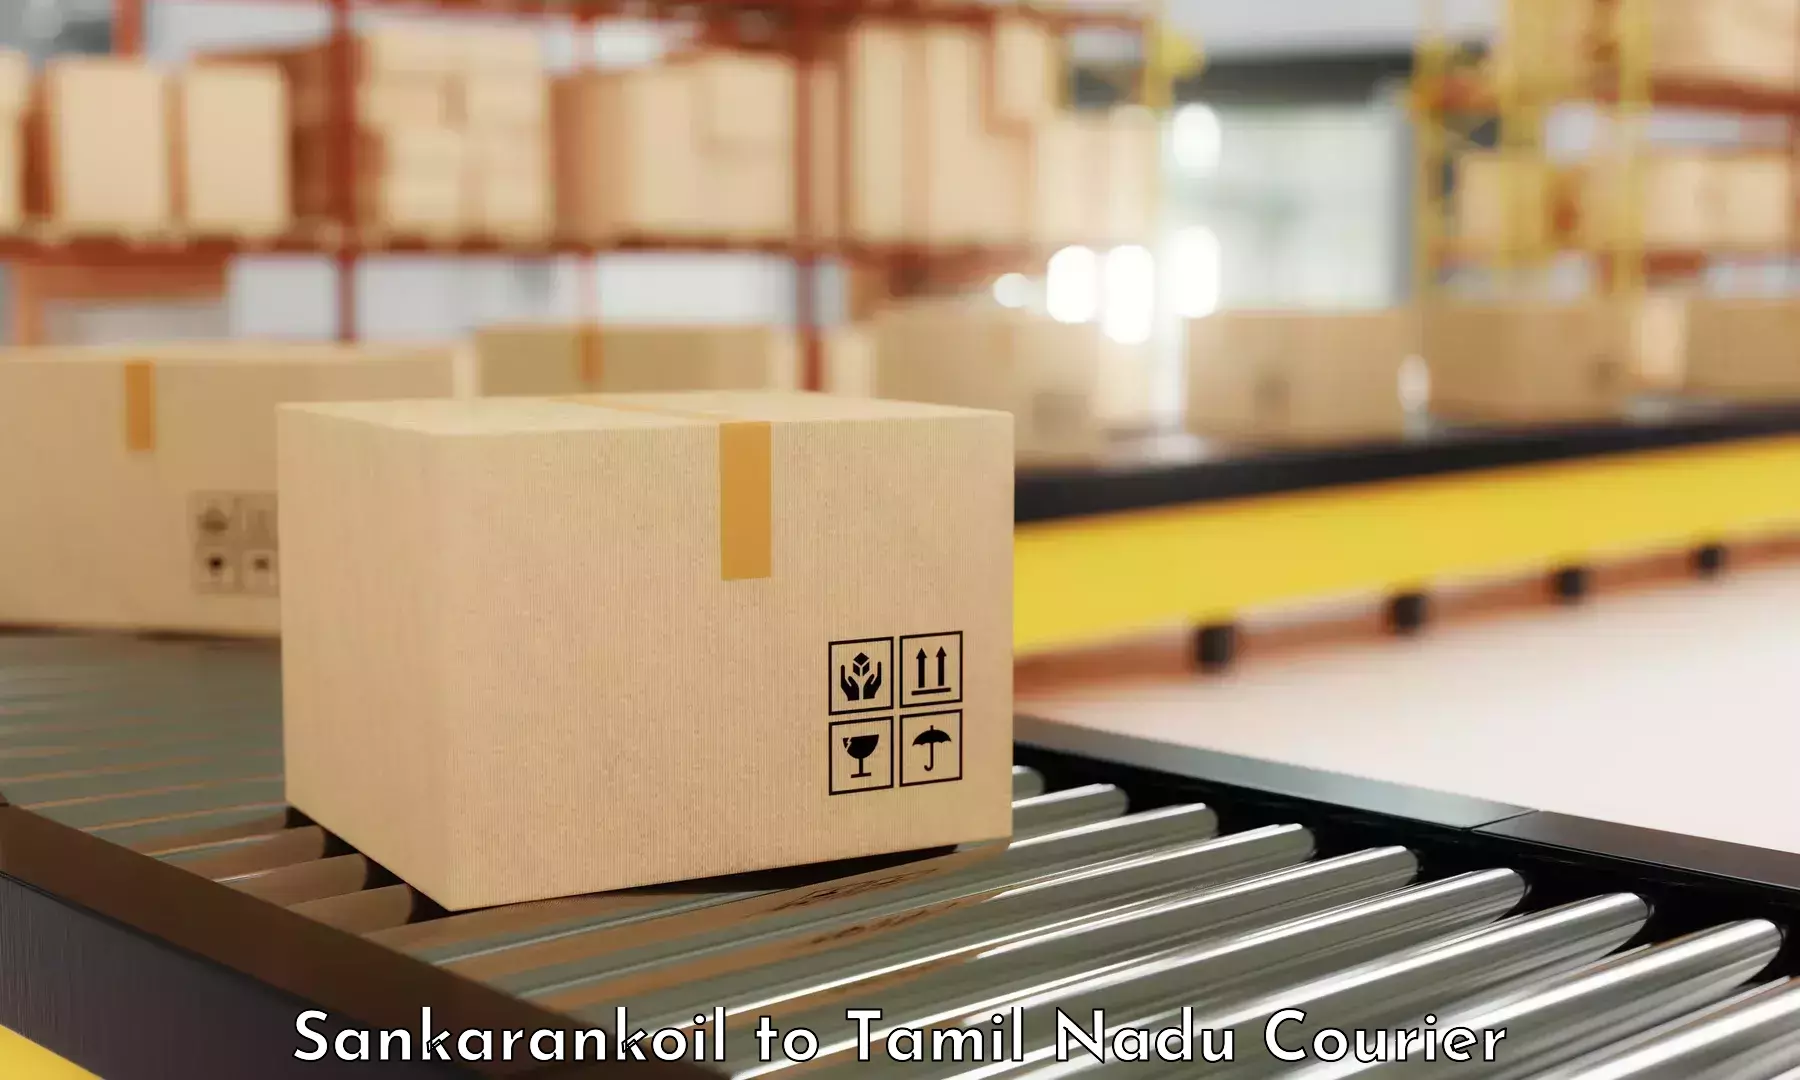 Rapid freight solutions Sankarankoil to Nandambakkam